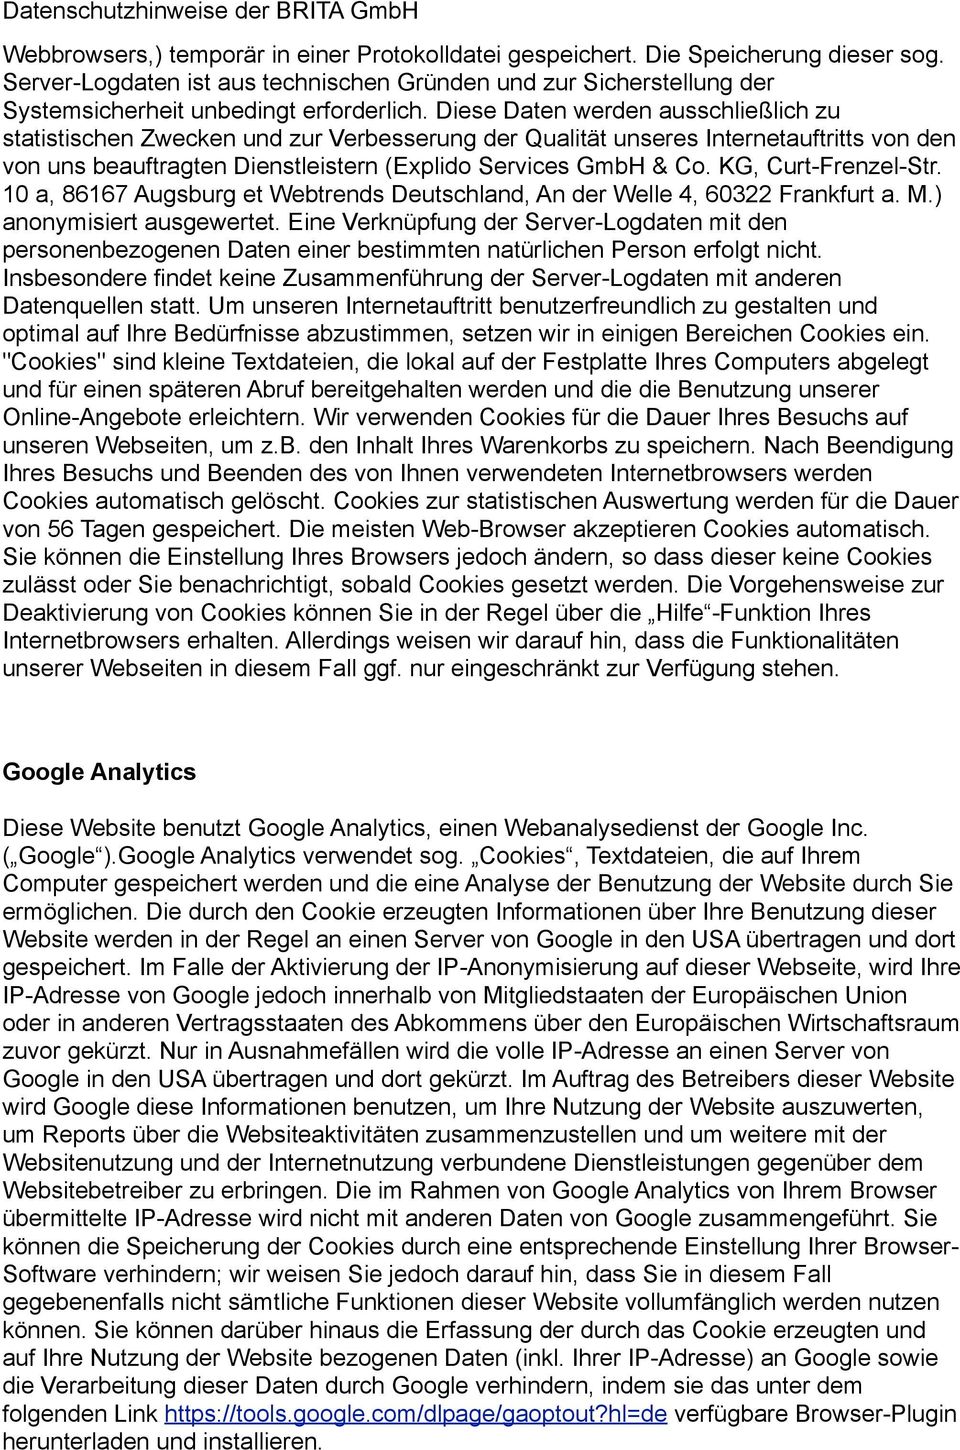 KG, Curt-Frenzel-Str. 10 a, 86167 Augsburg et Webtrends Deutschland, An der Welle 4, 60322 Frankfurt a. M.) anonymisiert ausgewertet.